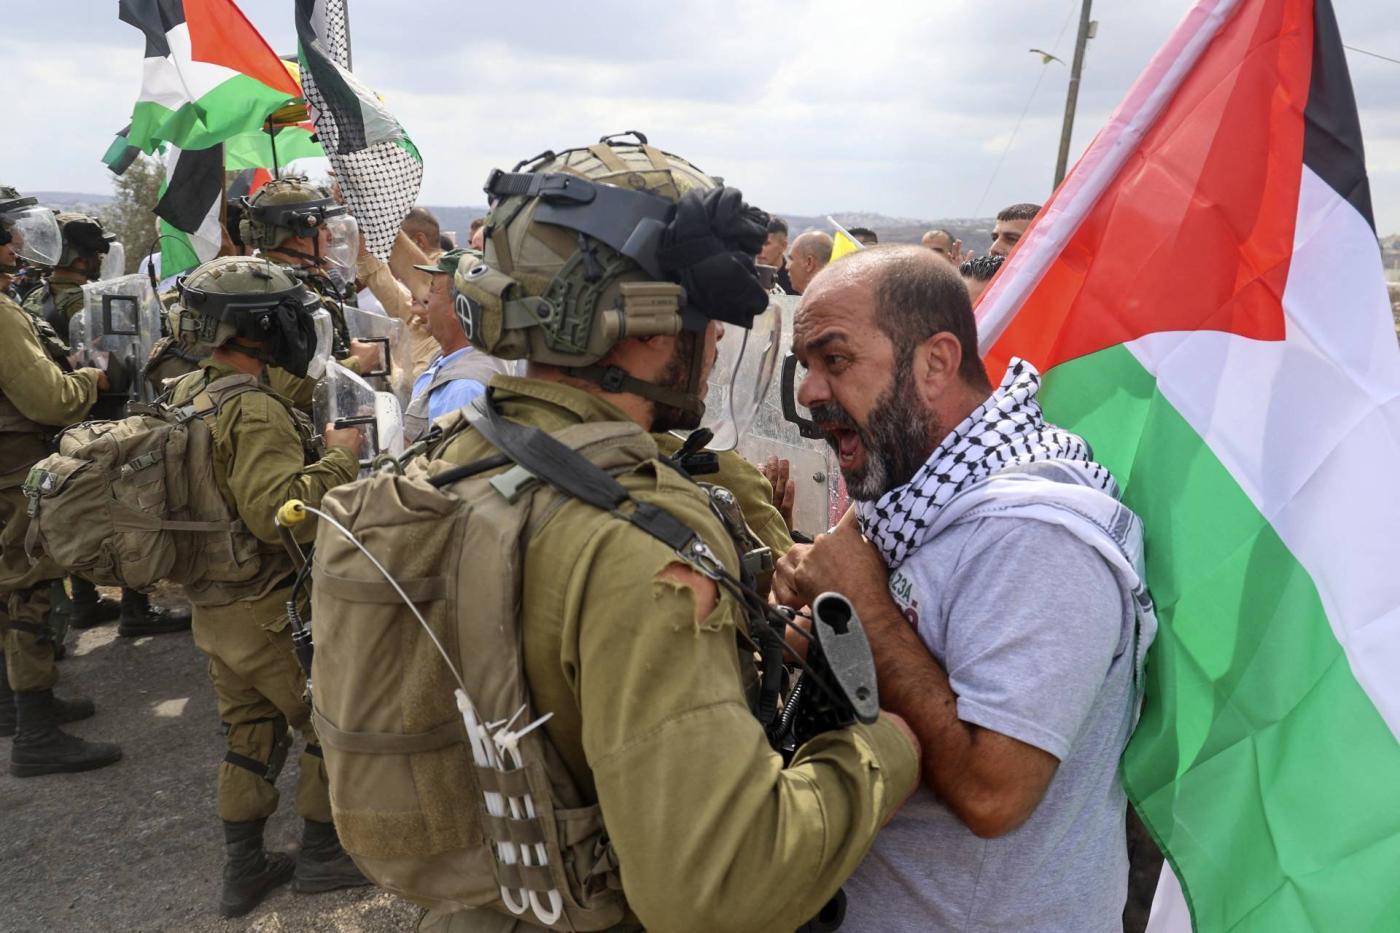 L'occupation de la Palestine par Israël est l'occupation militaire la plus longue et l'une des plus meurtrières au monde. Depuis des décennies, elle se caractérise par des violations généralisées et systématiques des droits humains à l'encontre des Palestiniens.